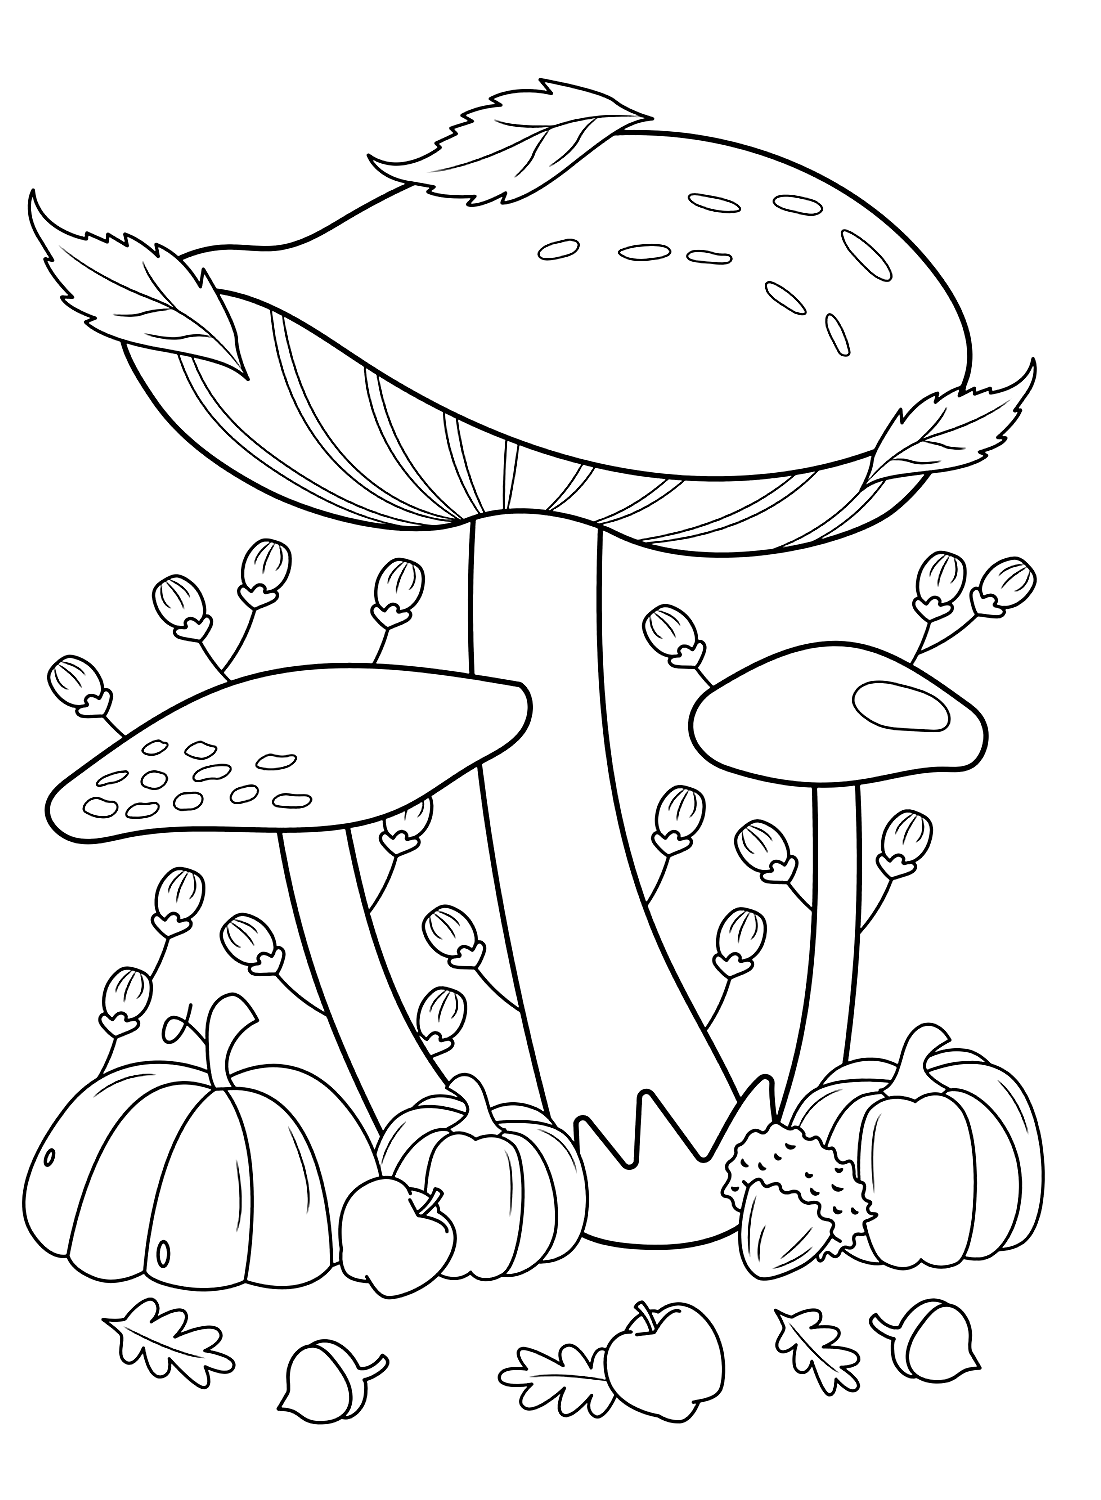 Special Mushroom sheet